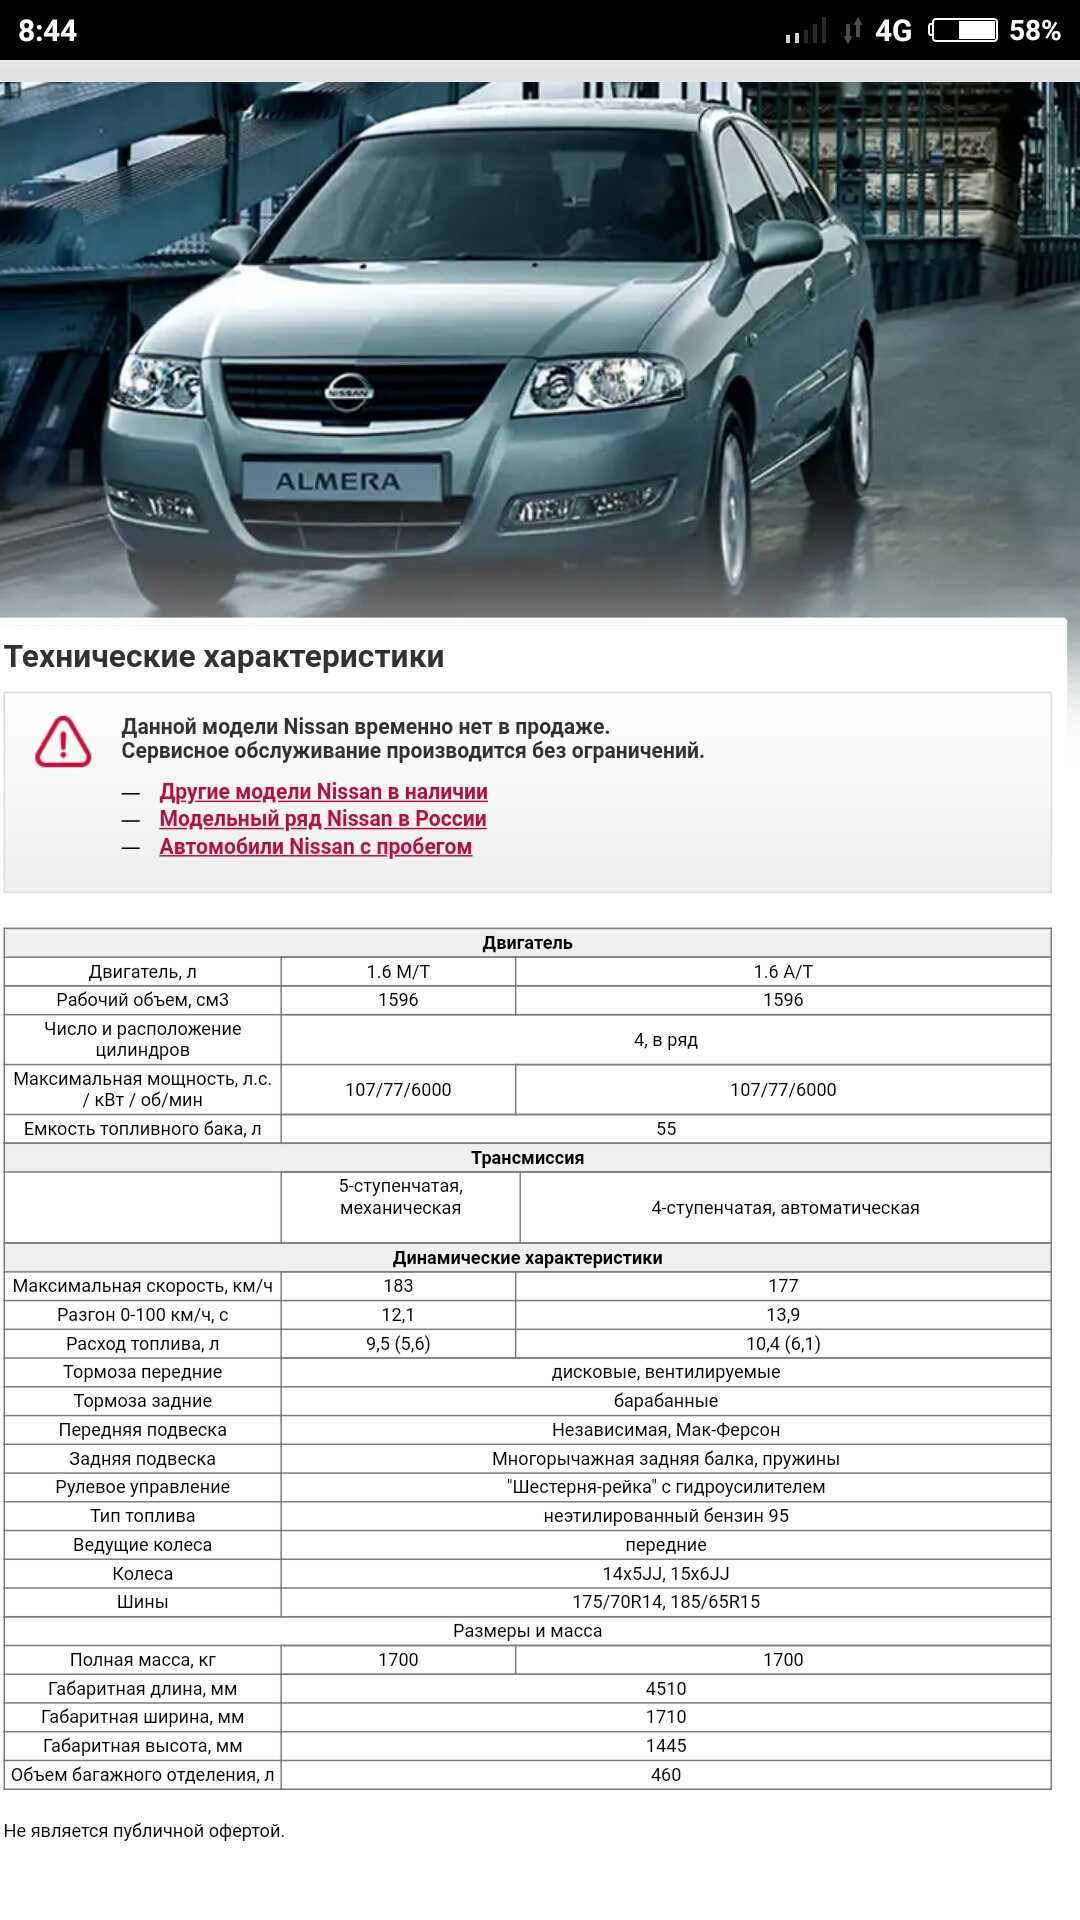 Седан nissan almera g15, обзор,комплектации и цены, характеристики, тест драйв - autotopik.ru